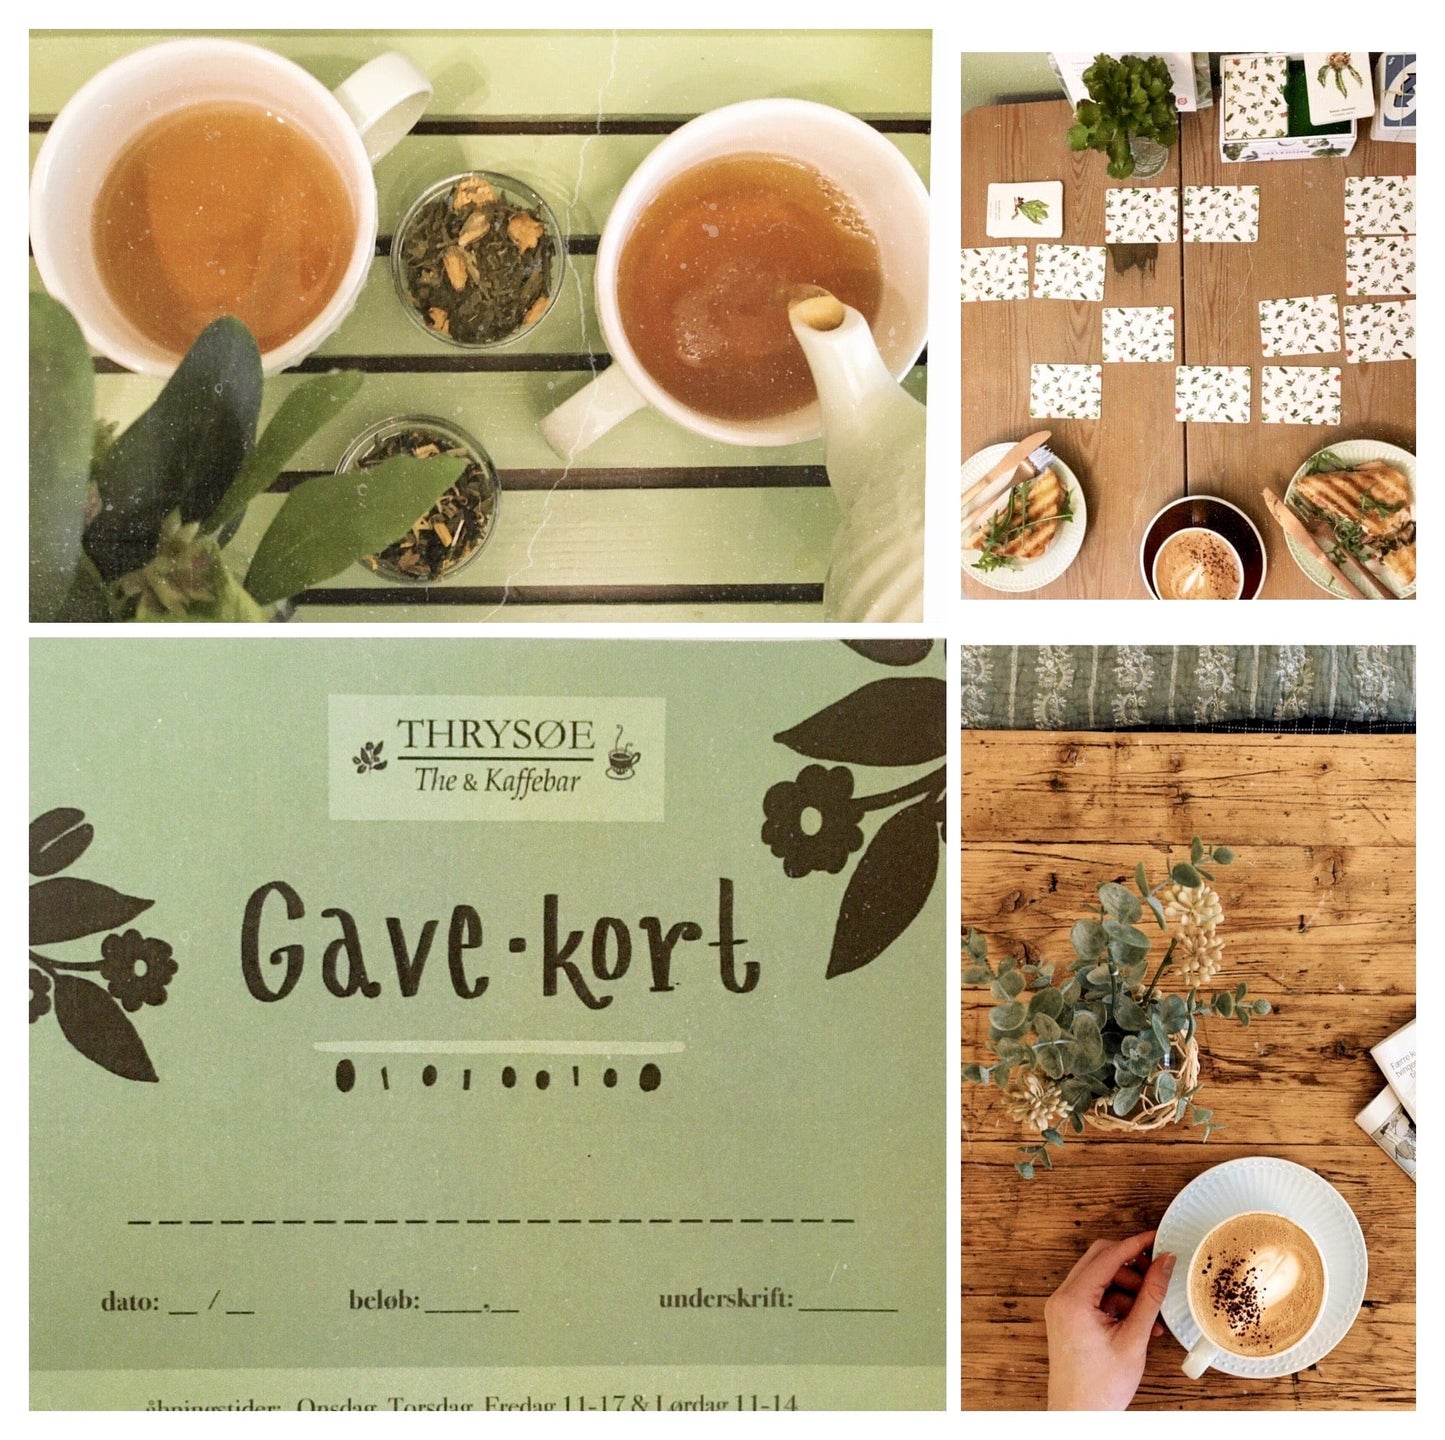 GAVEKORT - The & Kaffebaren - Thebutikken Thrysøe 